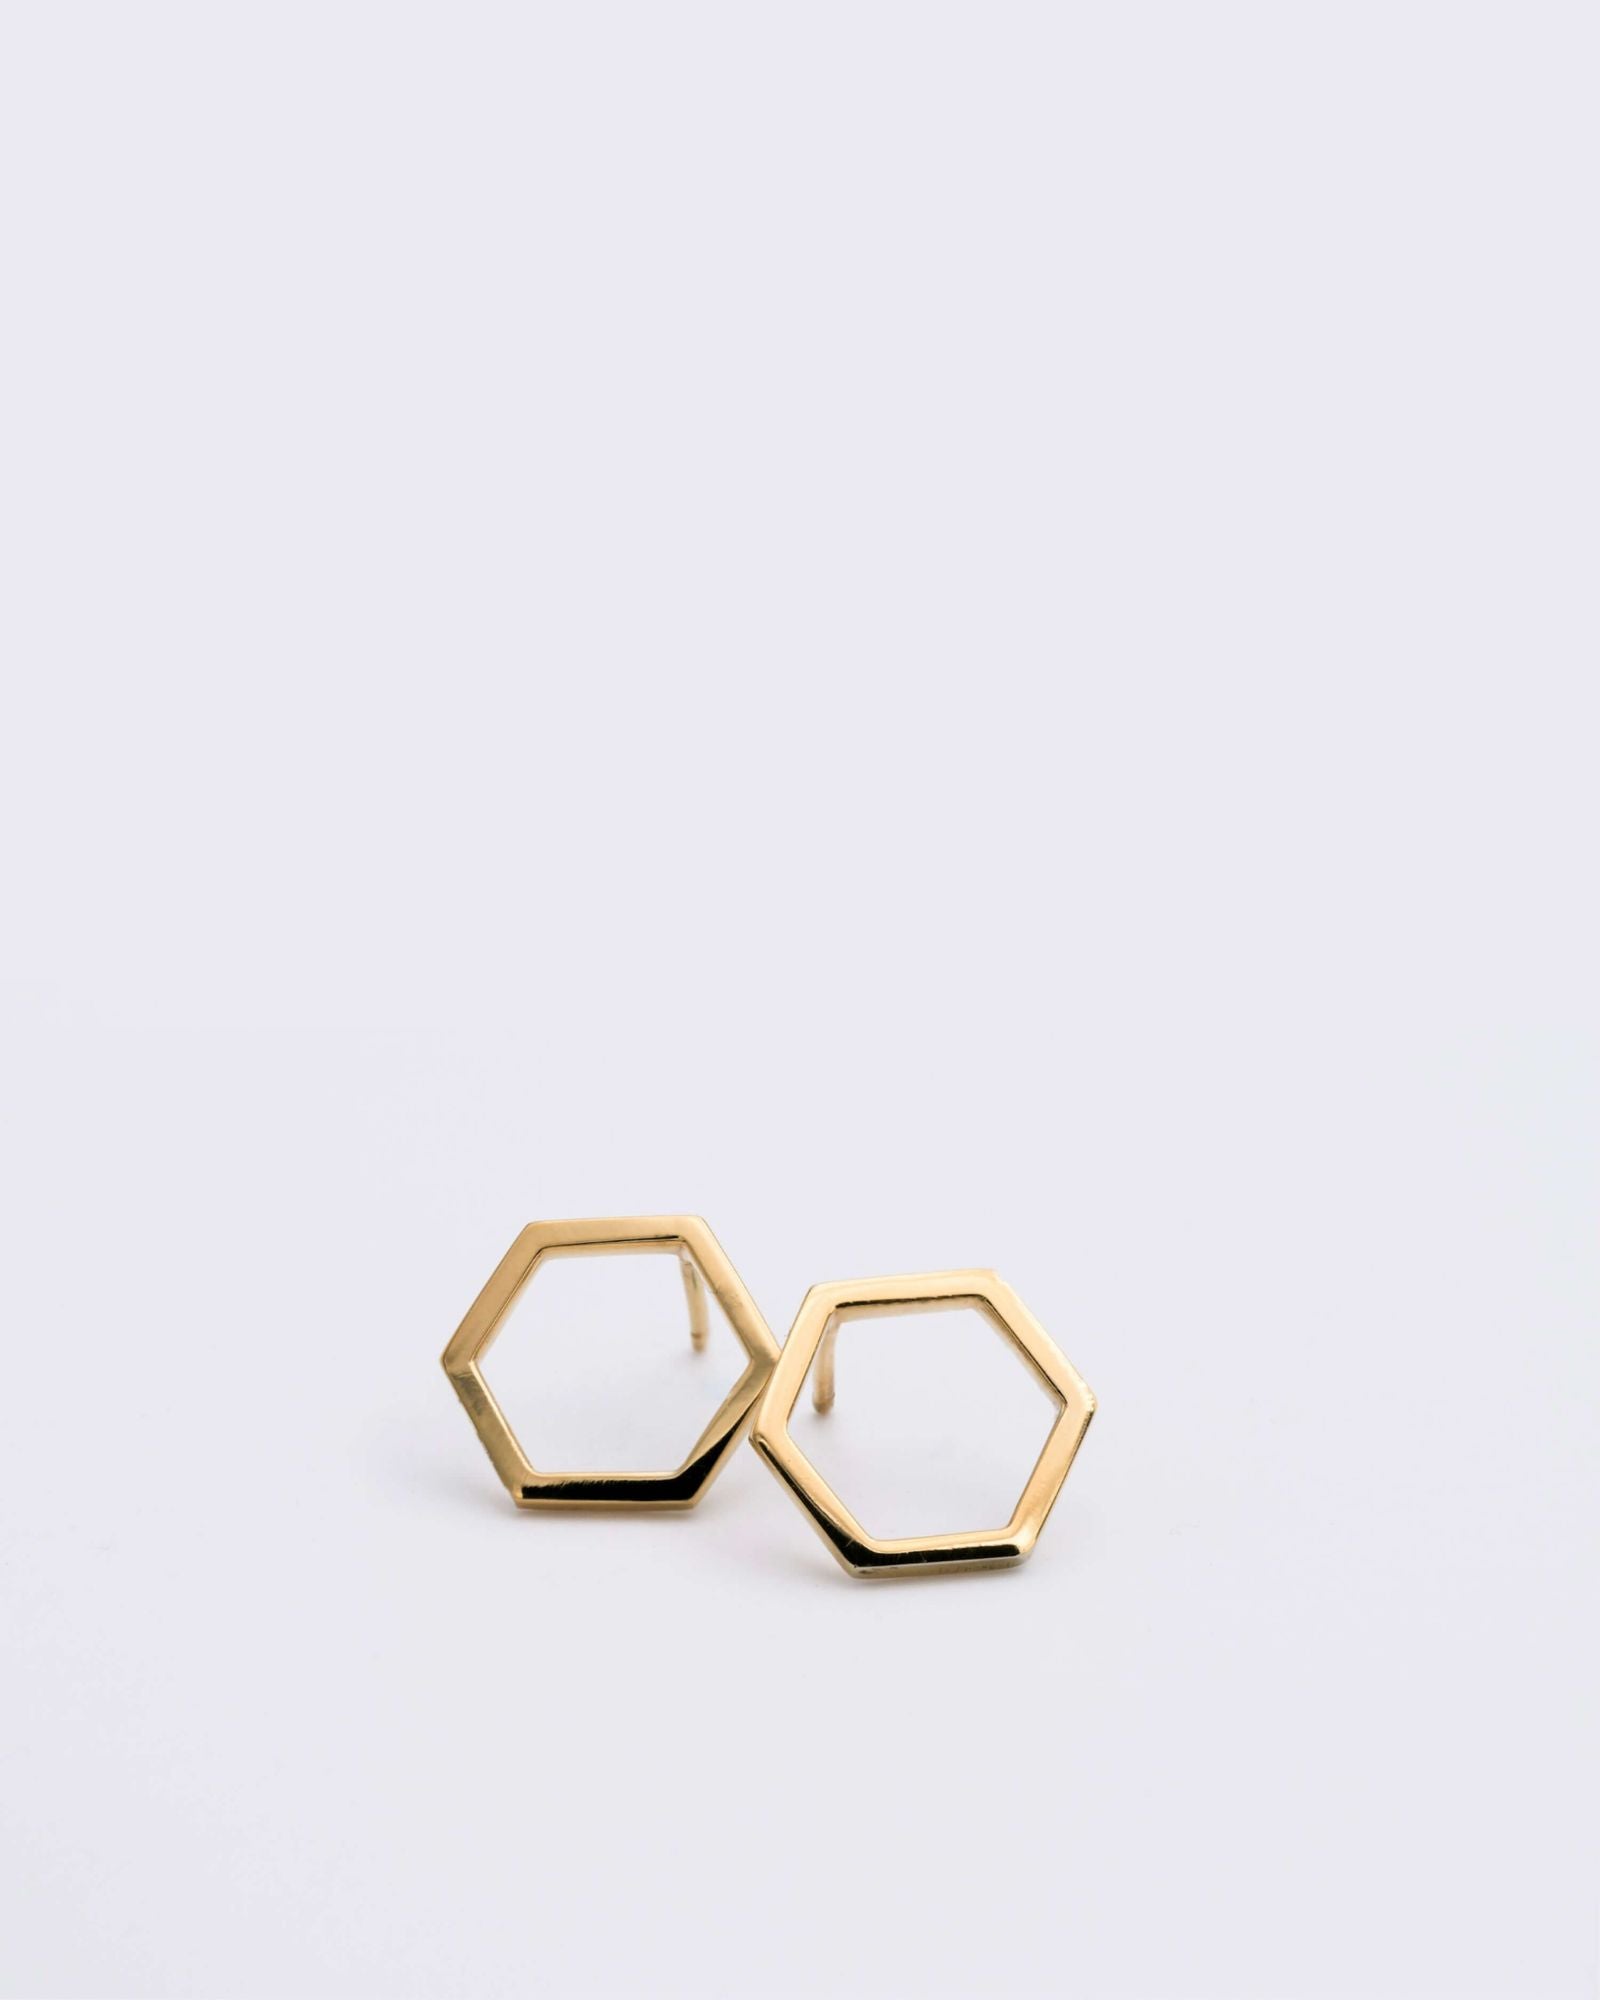 Boucles d'oreilles éthiques modèles Essentiel 14, forme hexagonale en vermeil non portées sur fond blanc.